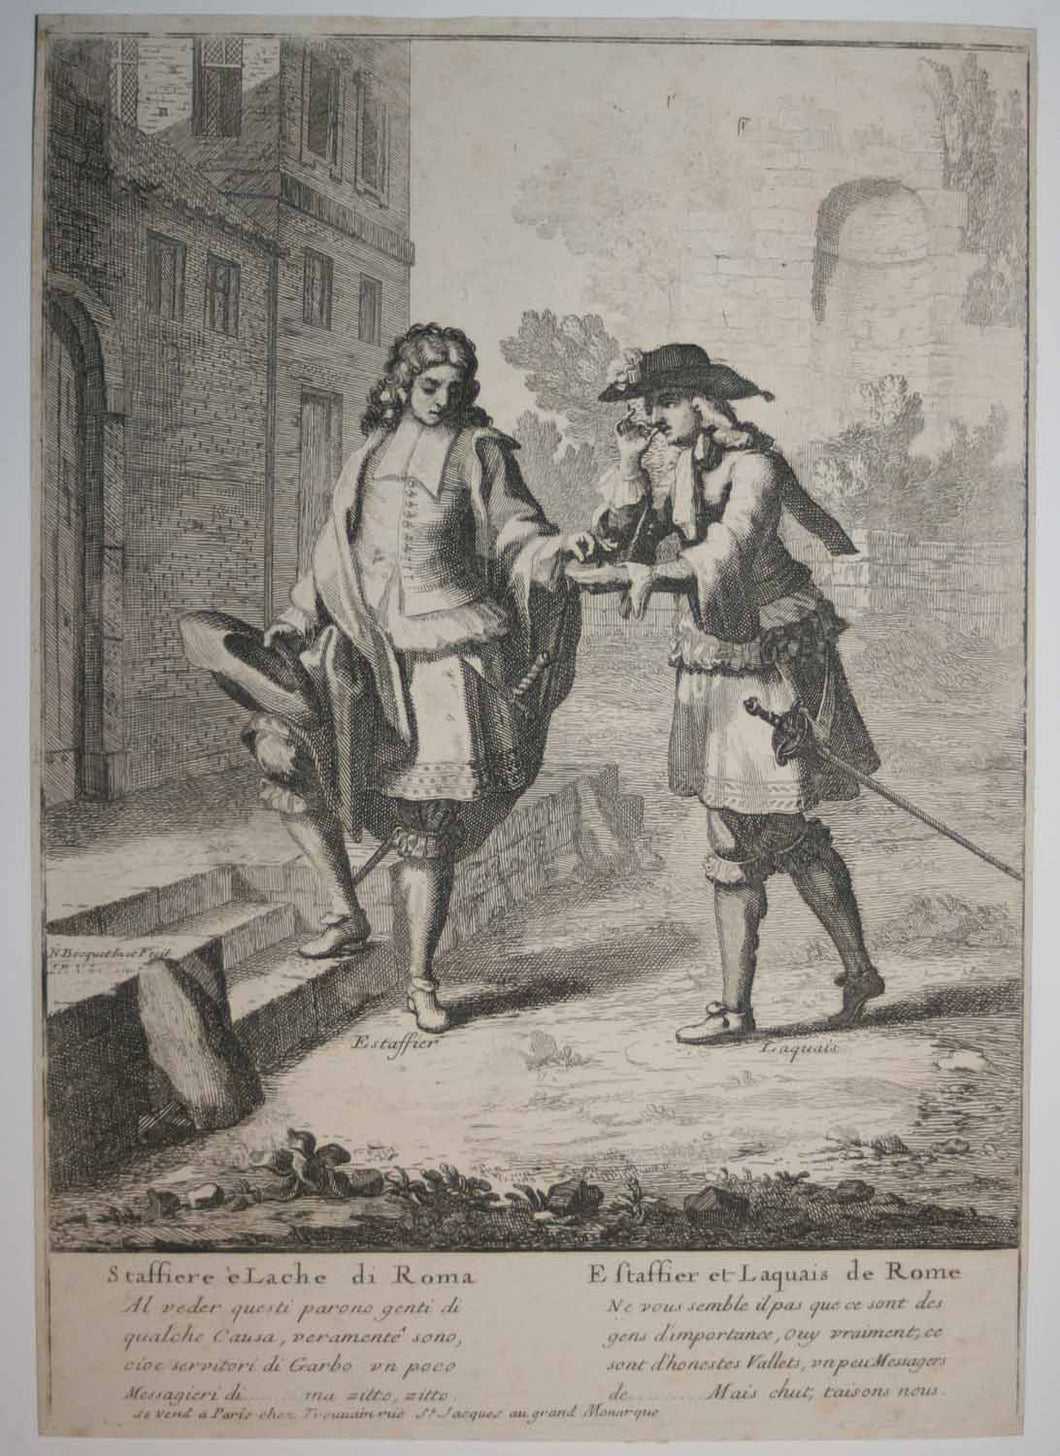 Estaffier et Laquais de Rome (prisant du tabac).